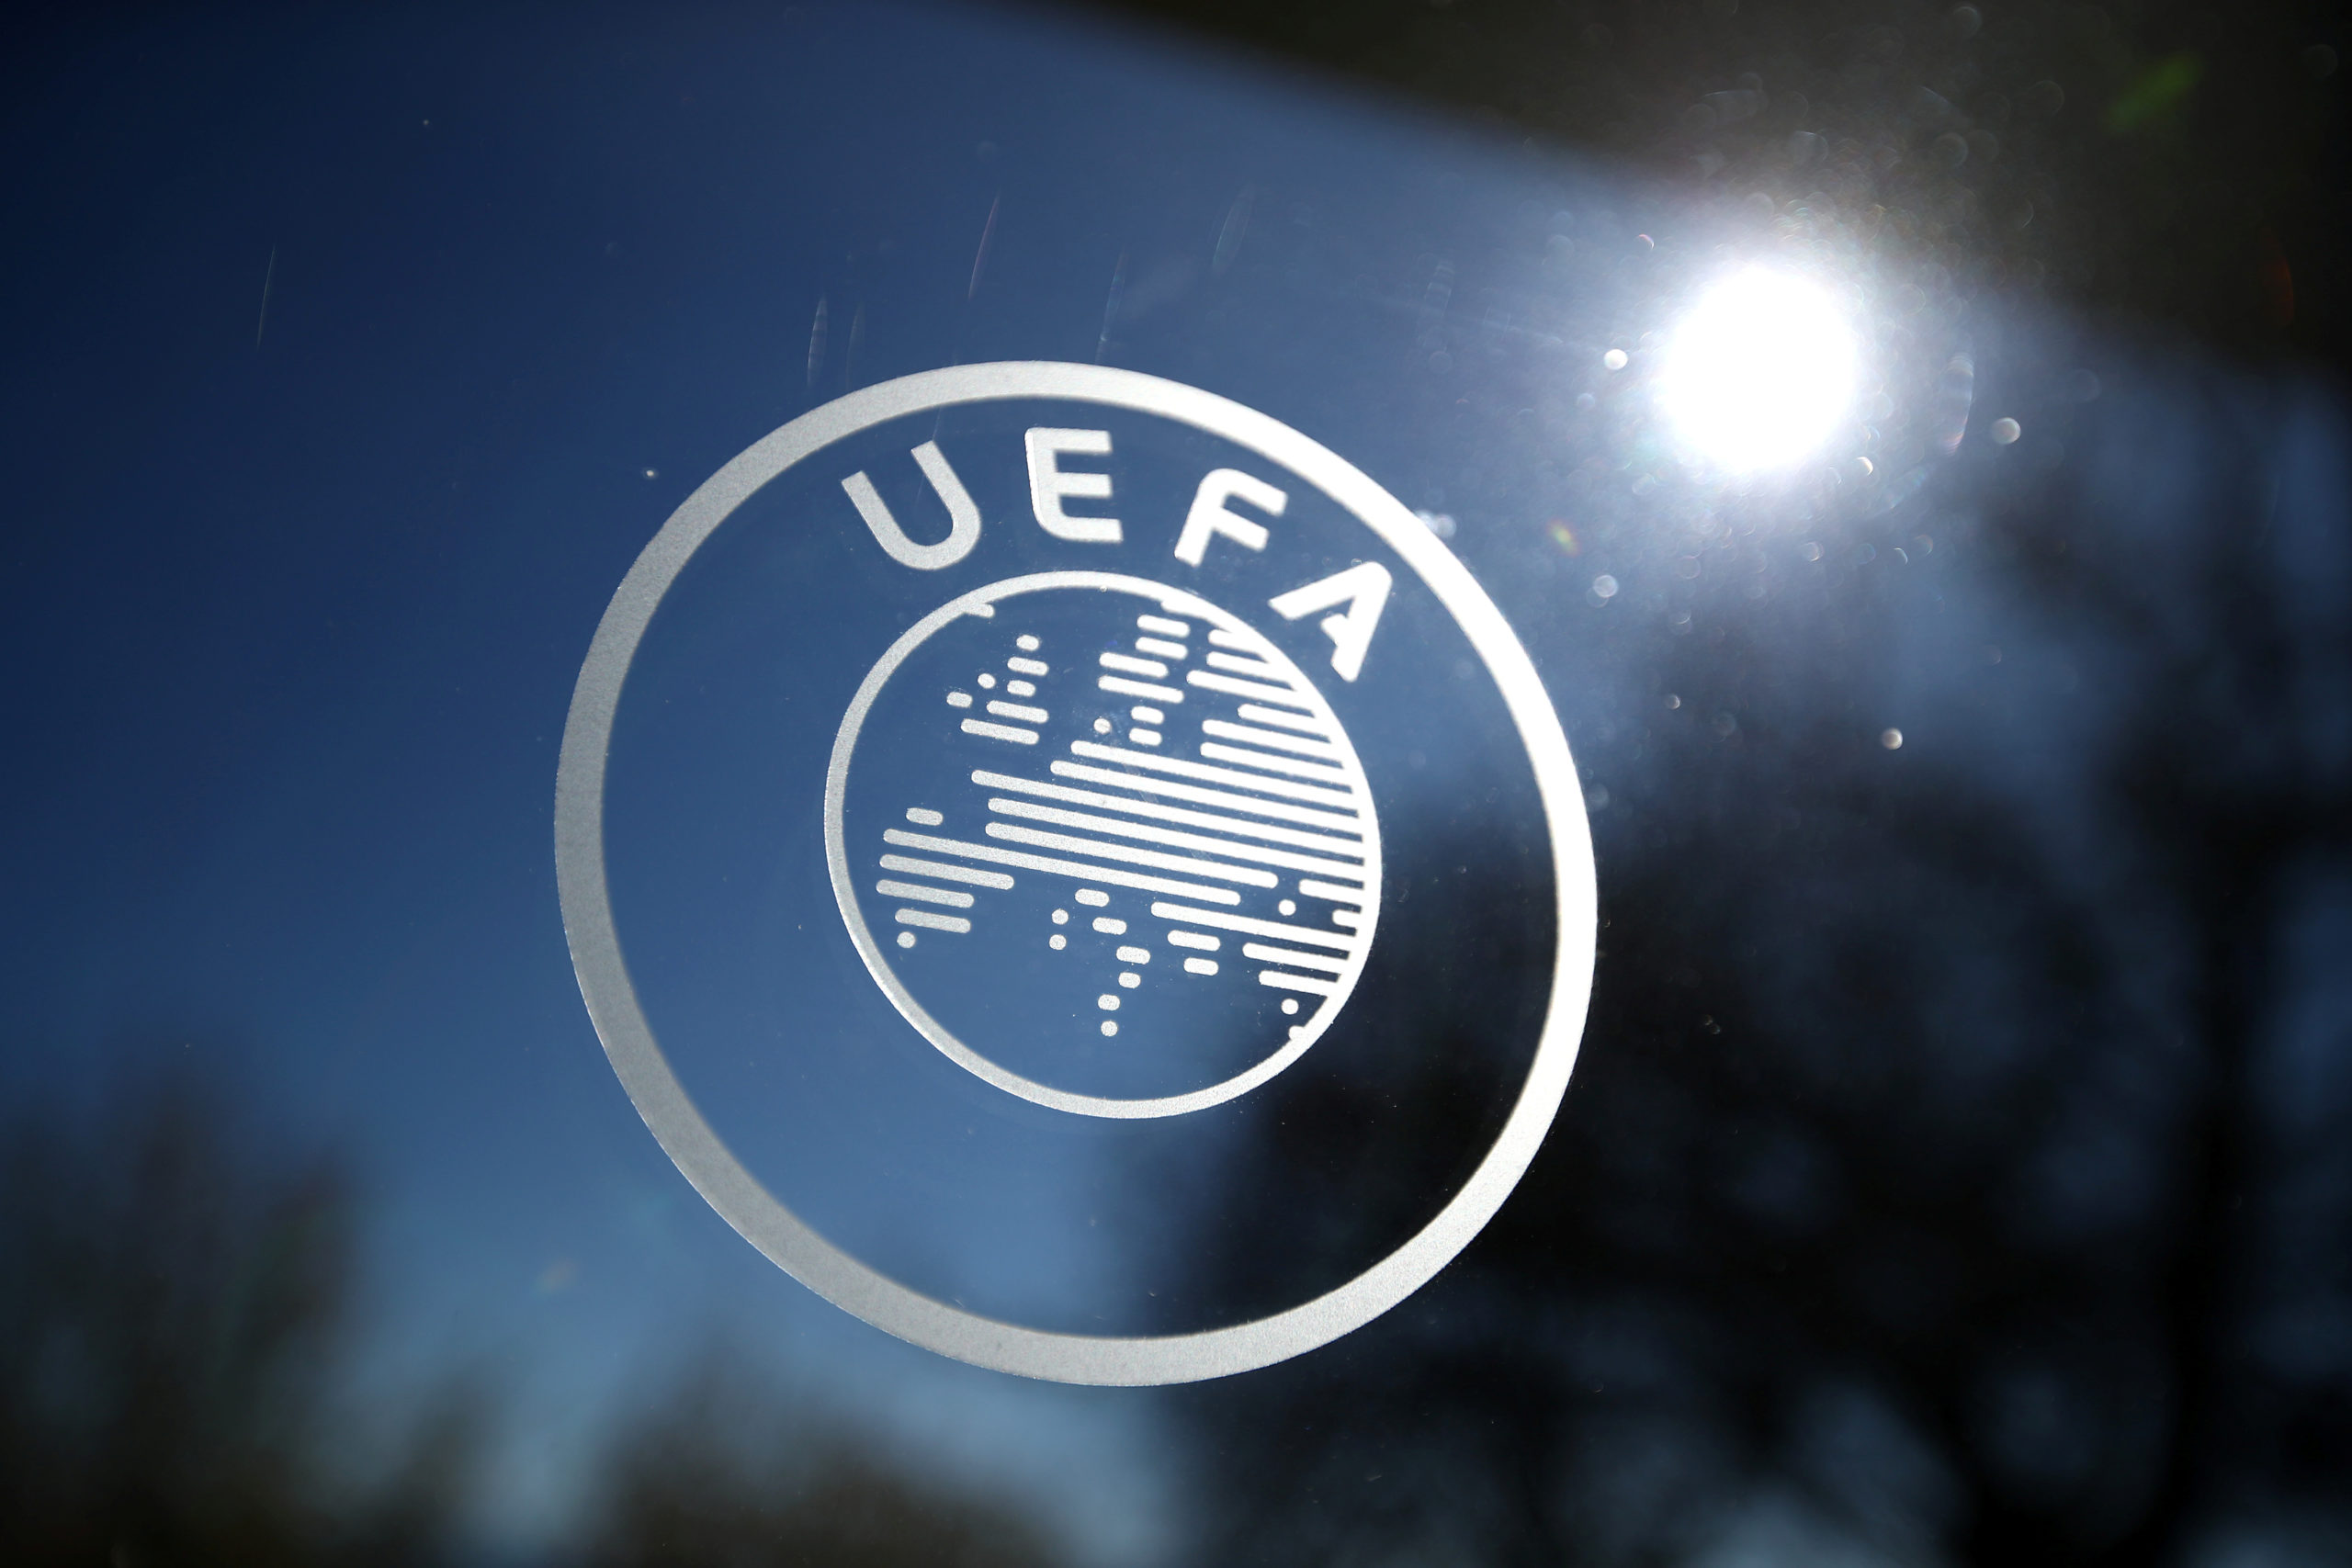 UEFA football